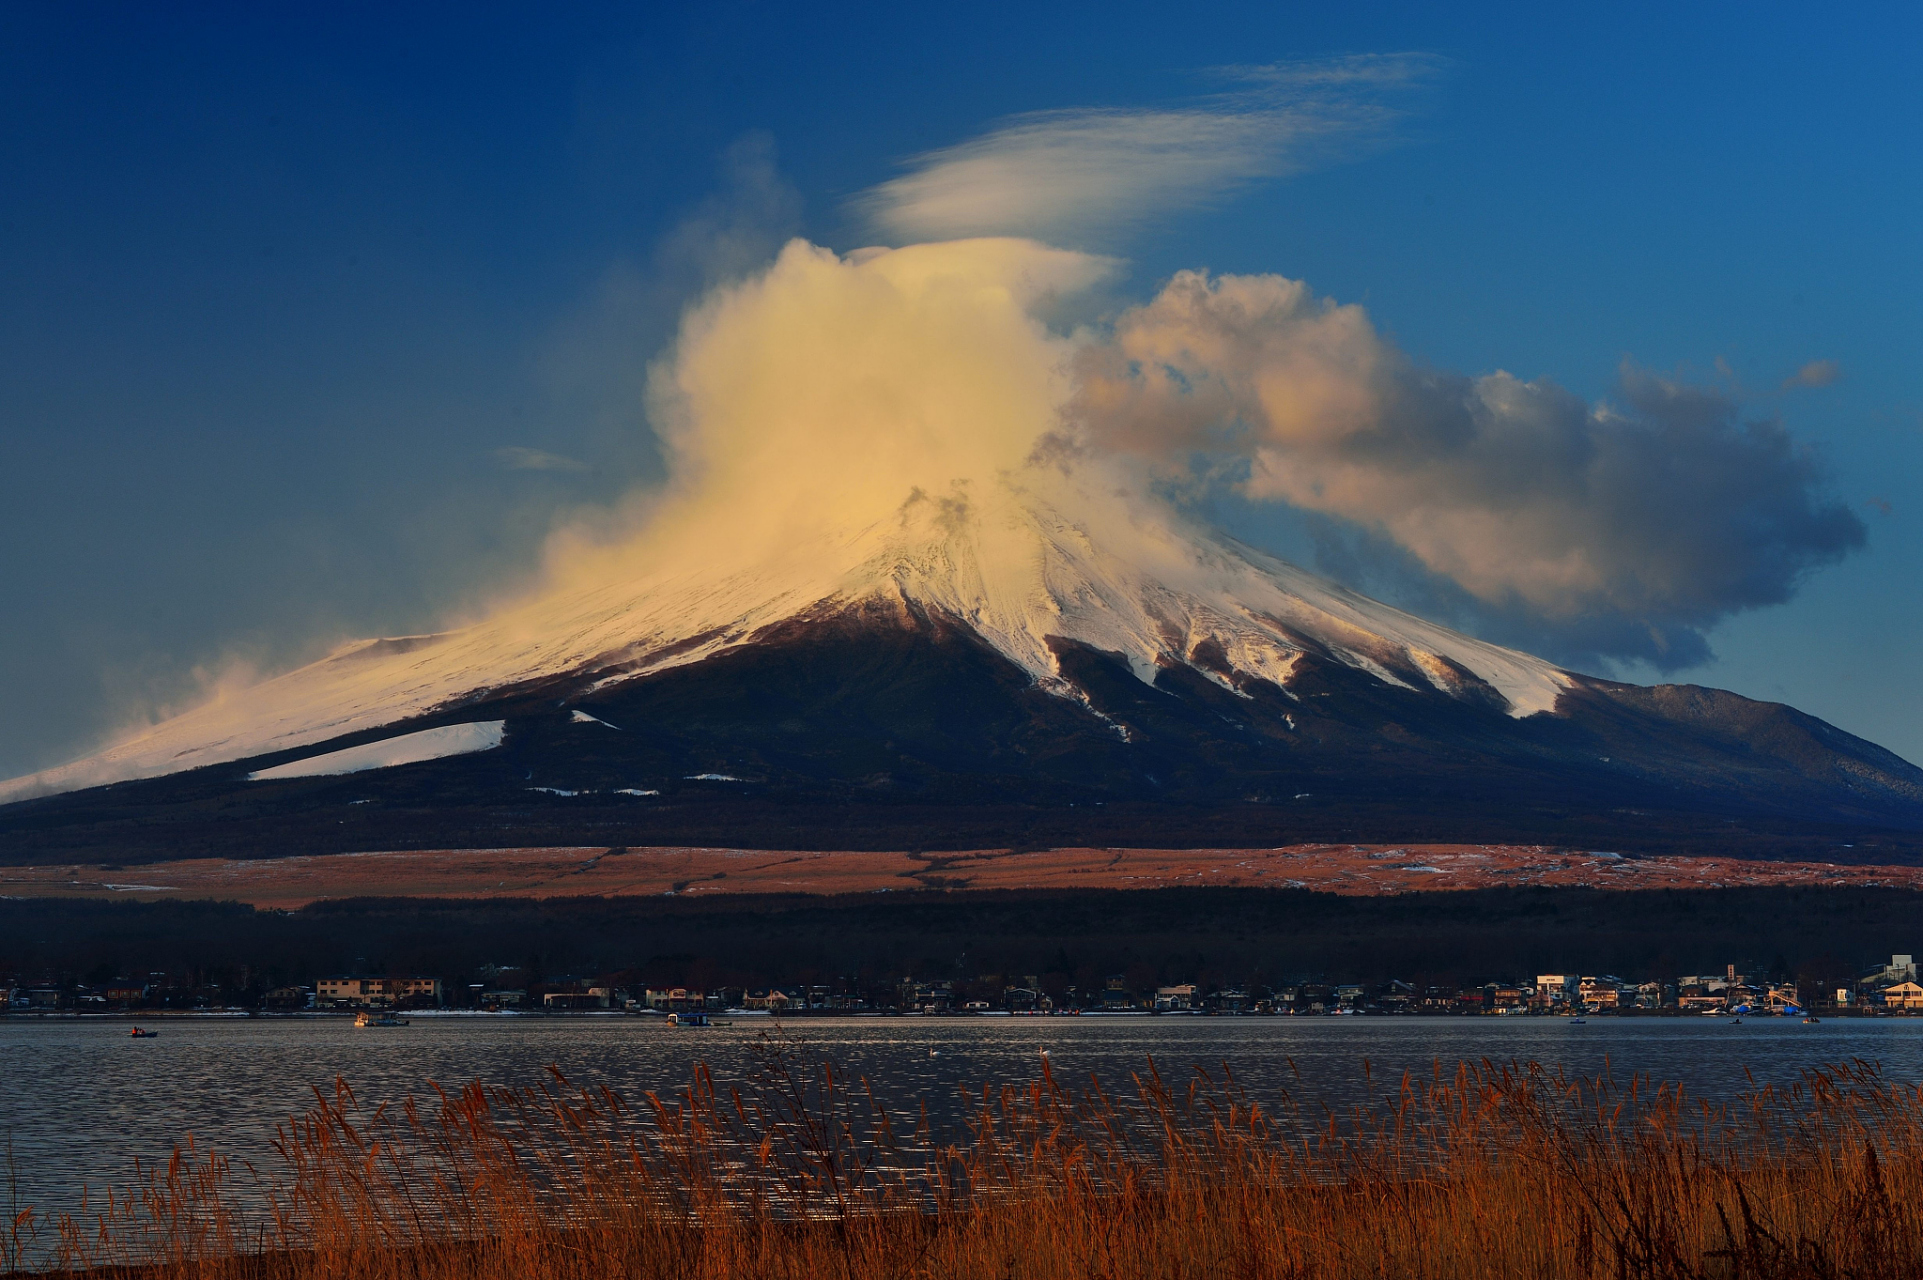 富士山是日本本州岛静冈县和山梨县之间的活火山,主峰海拔3775